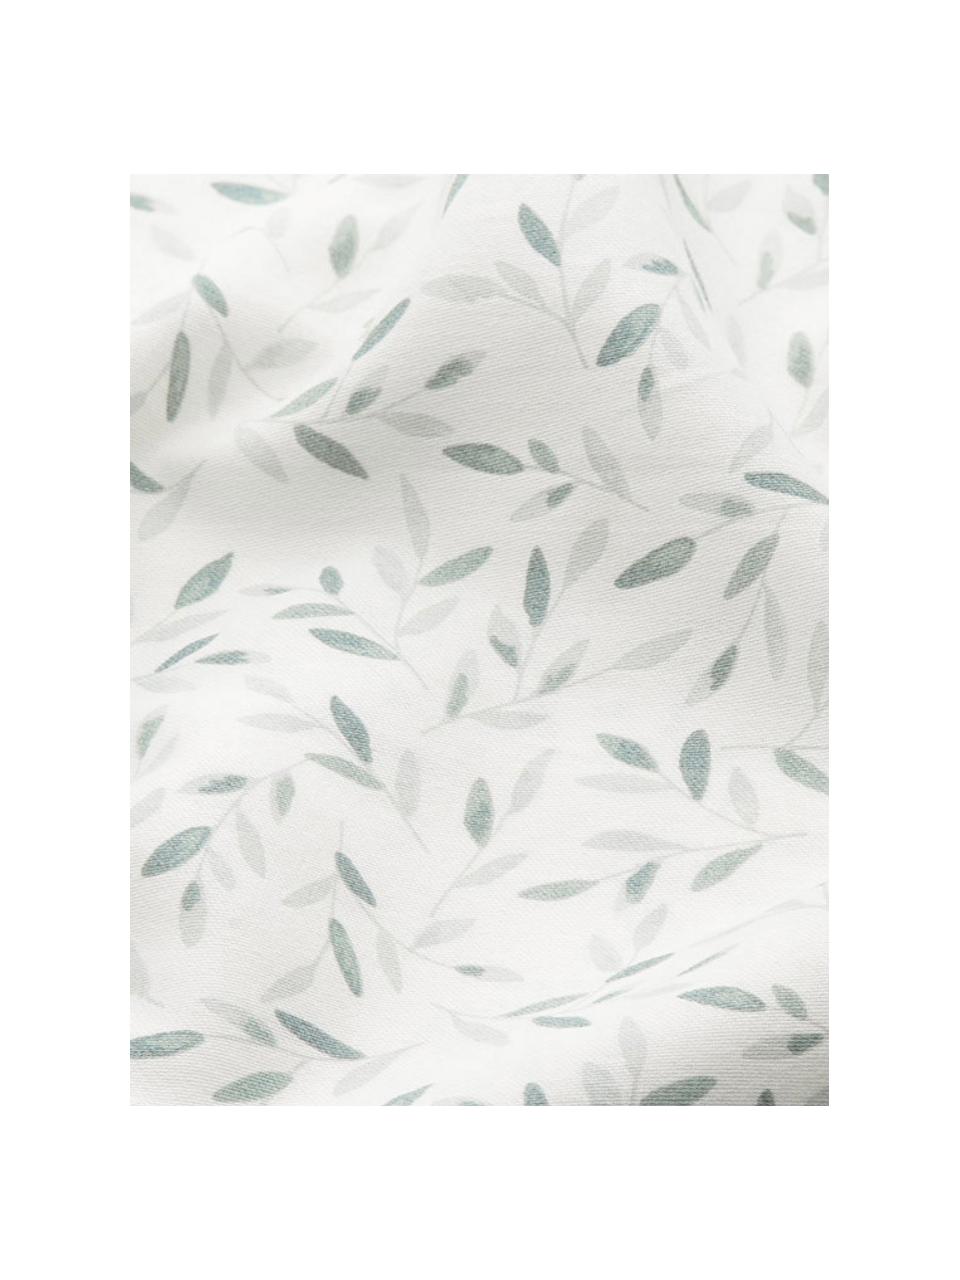 Cambiador de algodón ecológico Green Leaves, Funda: 100% algodón ecológico co, Blanco y verde estampado, An 30 x L 70 cm